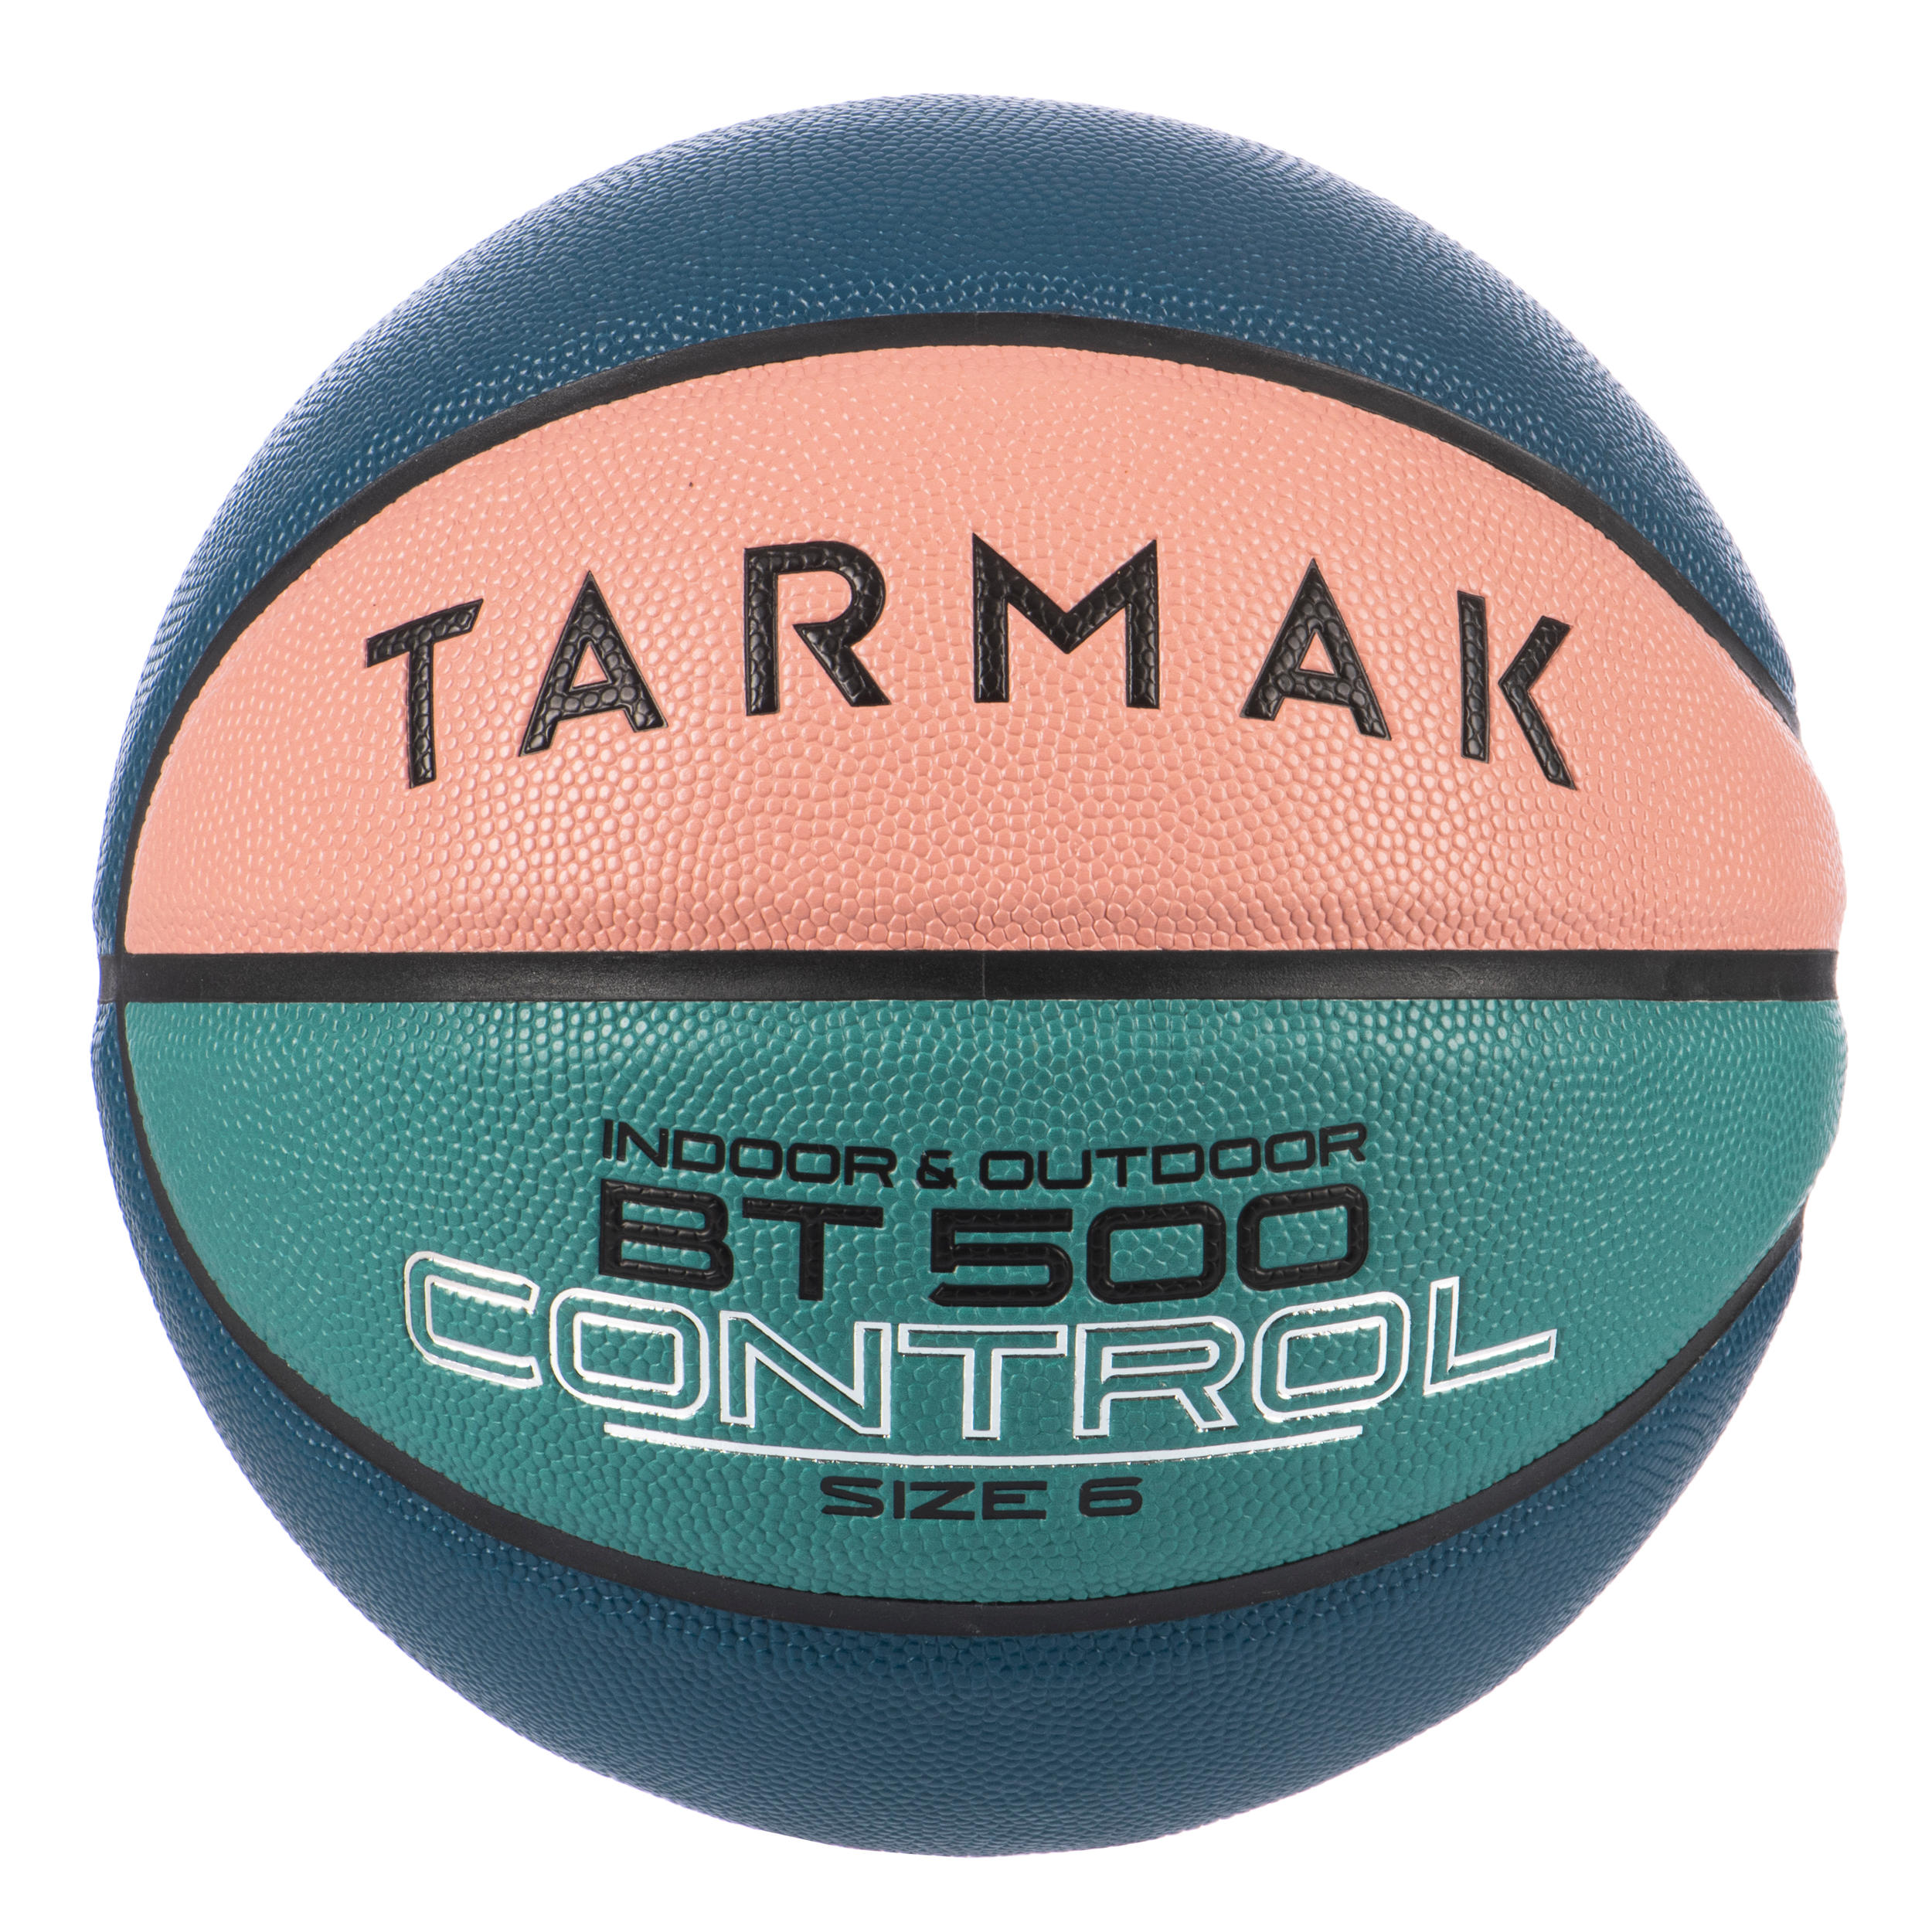 Size 6 Basketball BT500 - Pink/Green/Blue 1/5